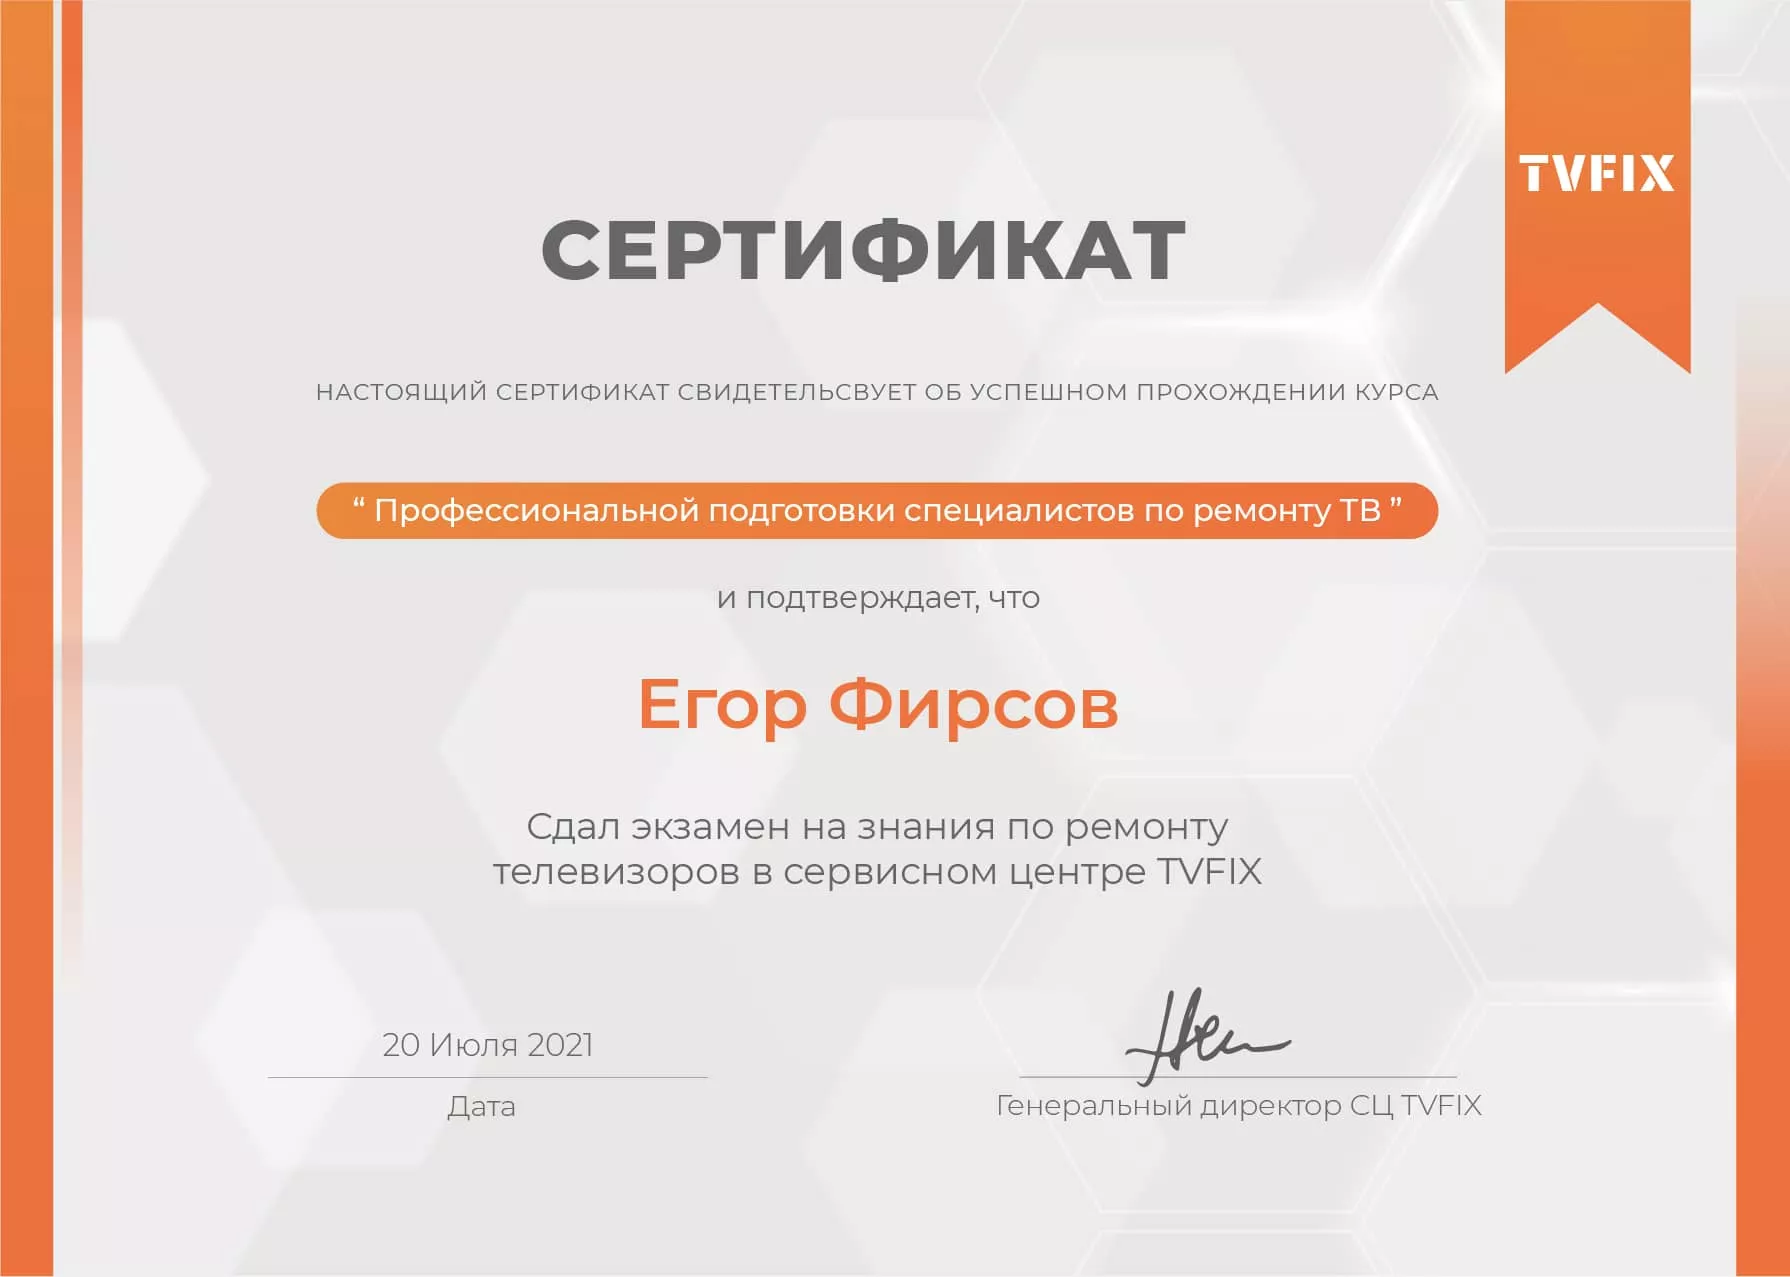 Егор Фирсов сертификат телемастера